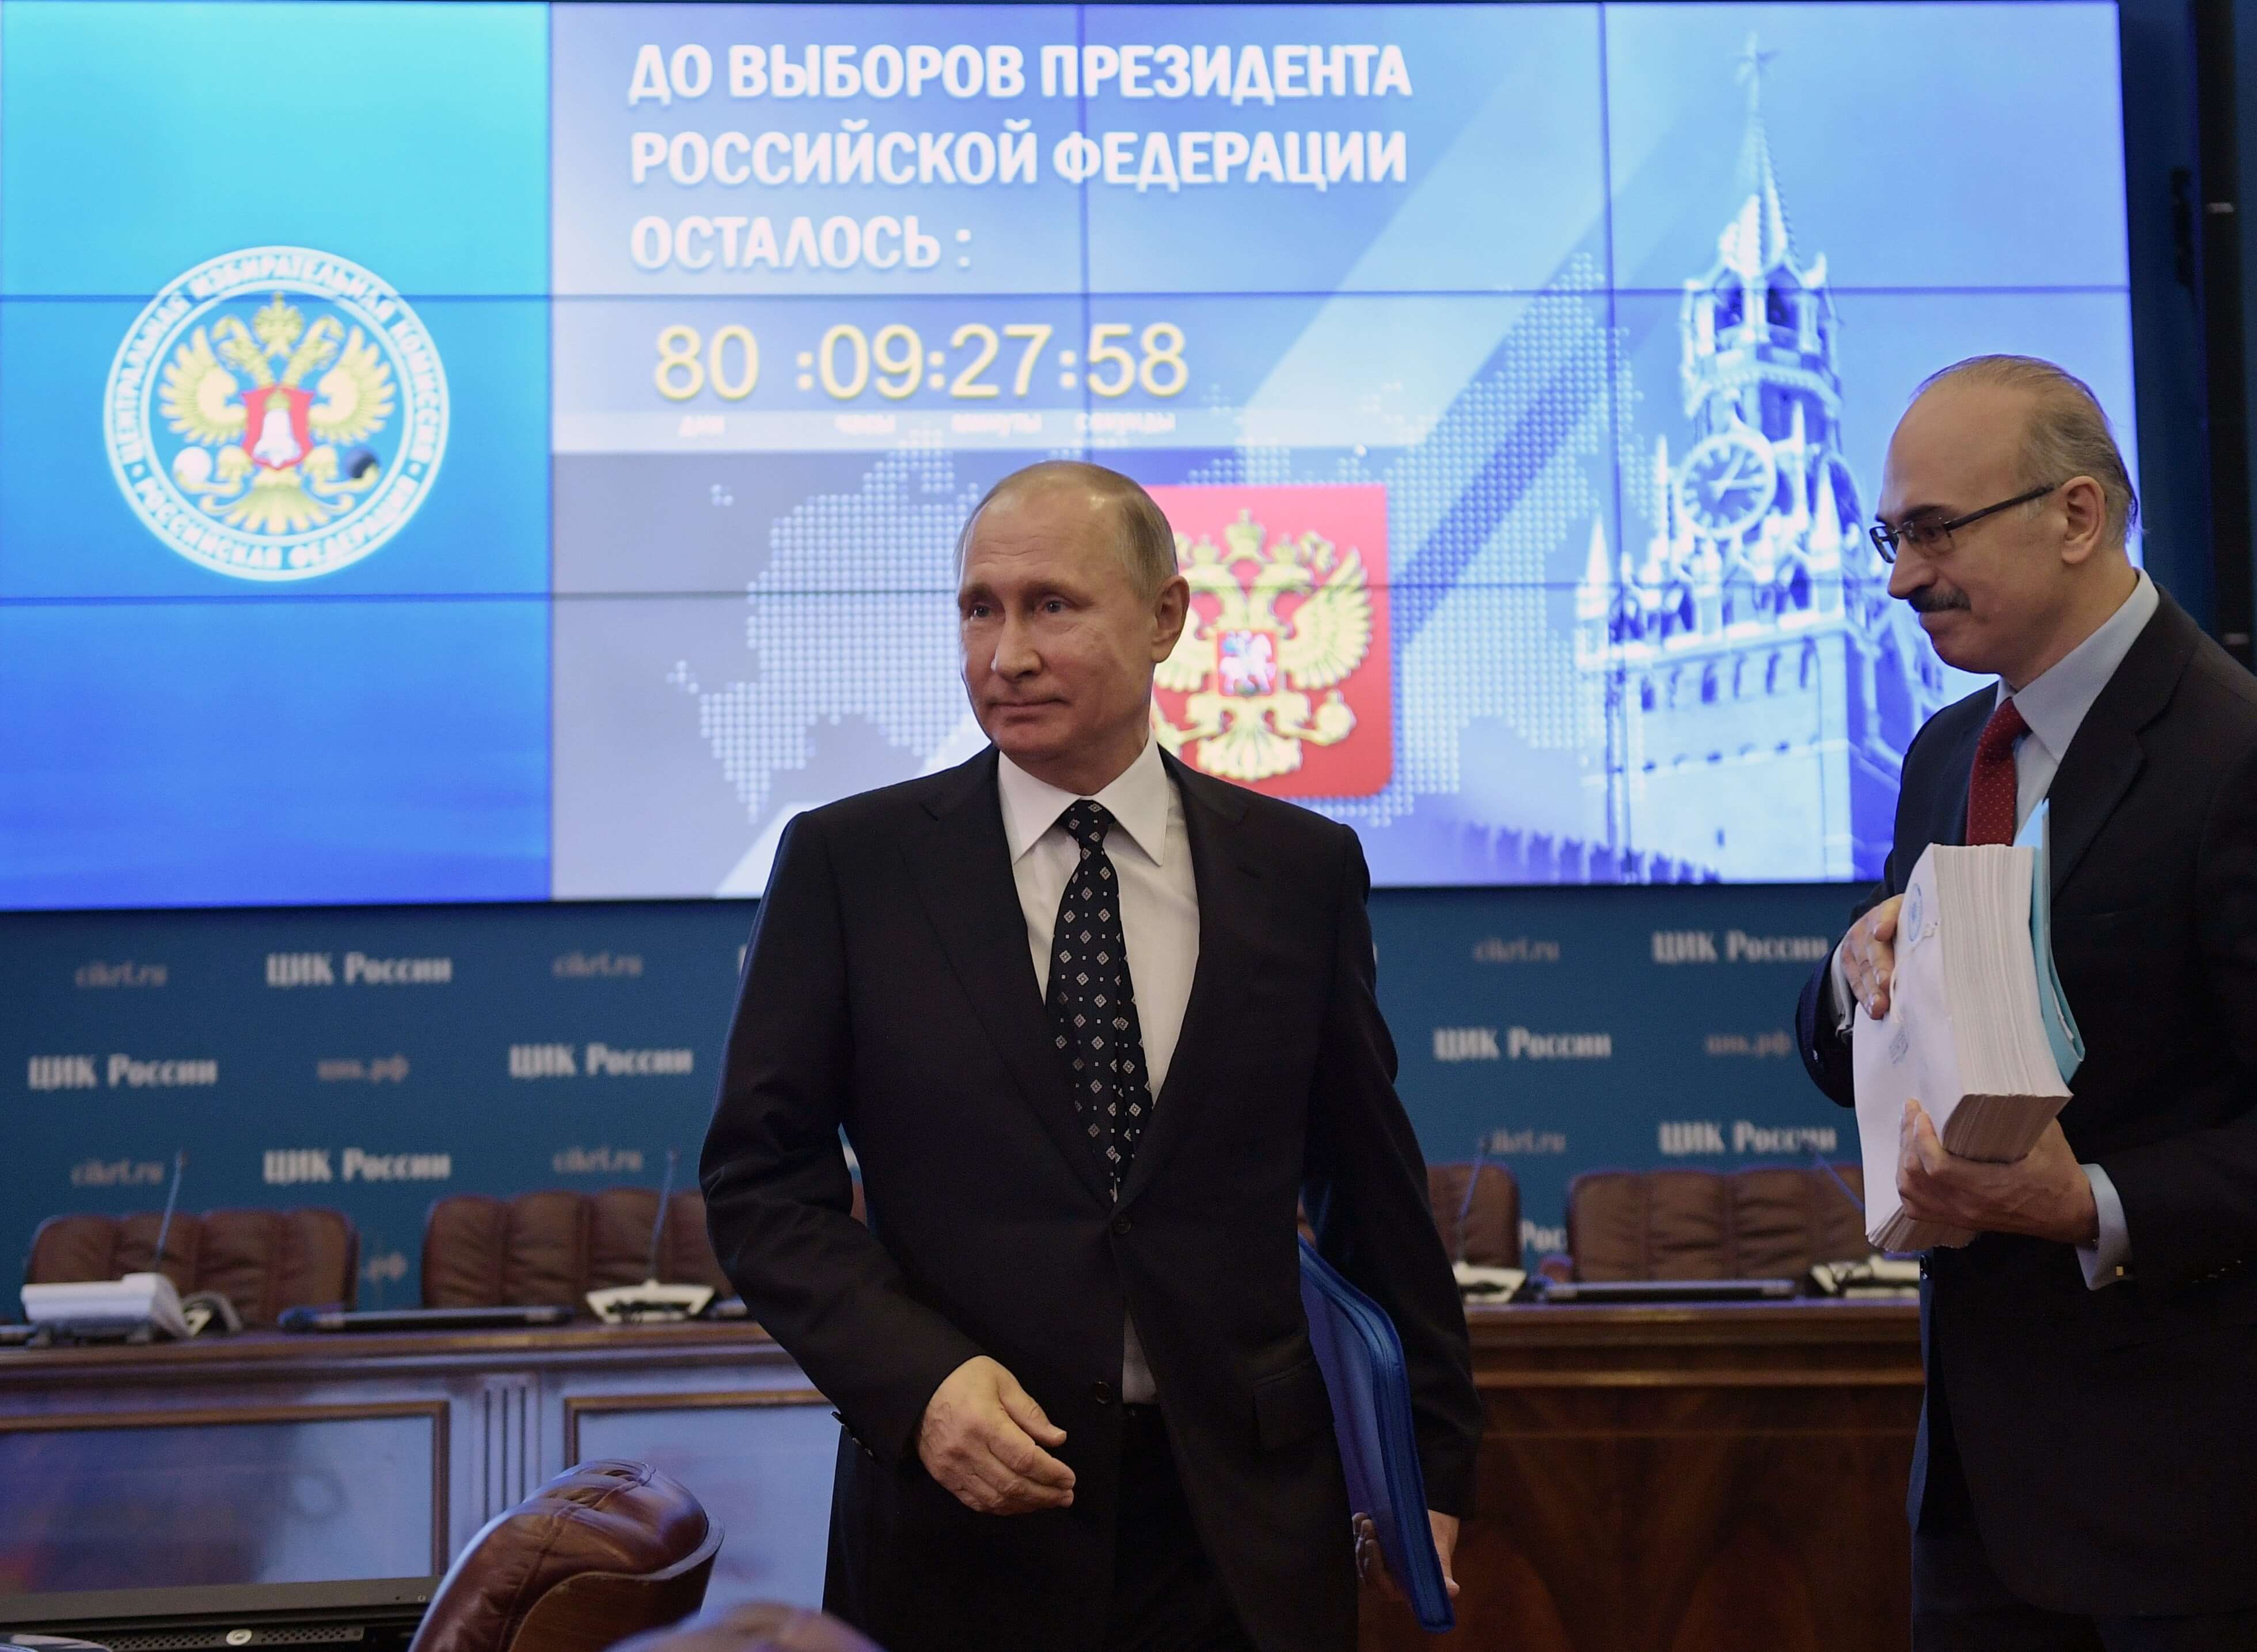 Putin acude personalmente a la comisión electoral para inscribir su candidatura presidencial